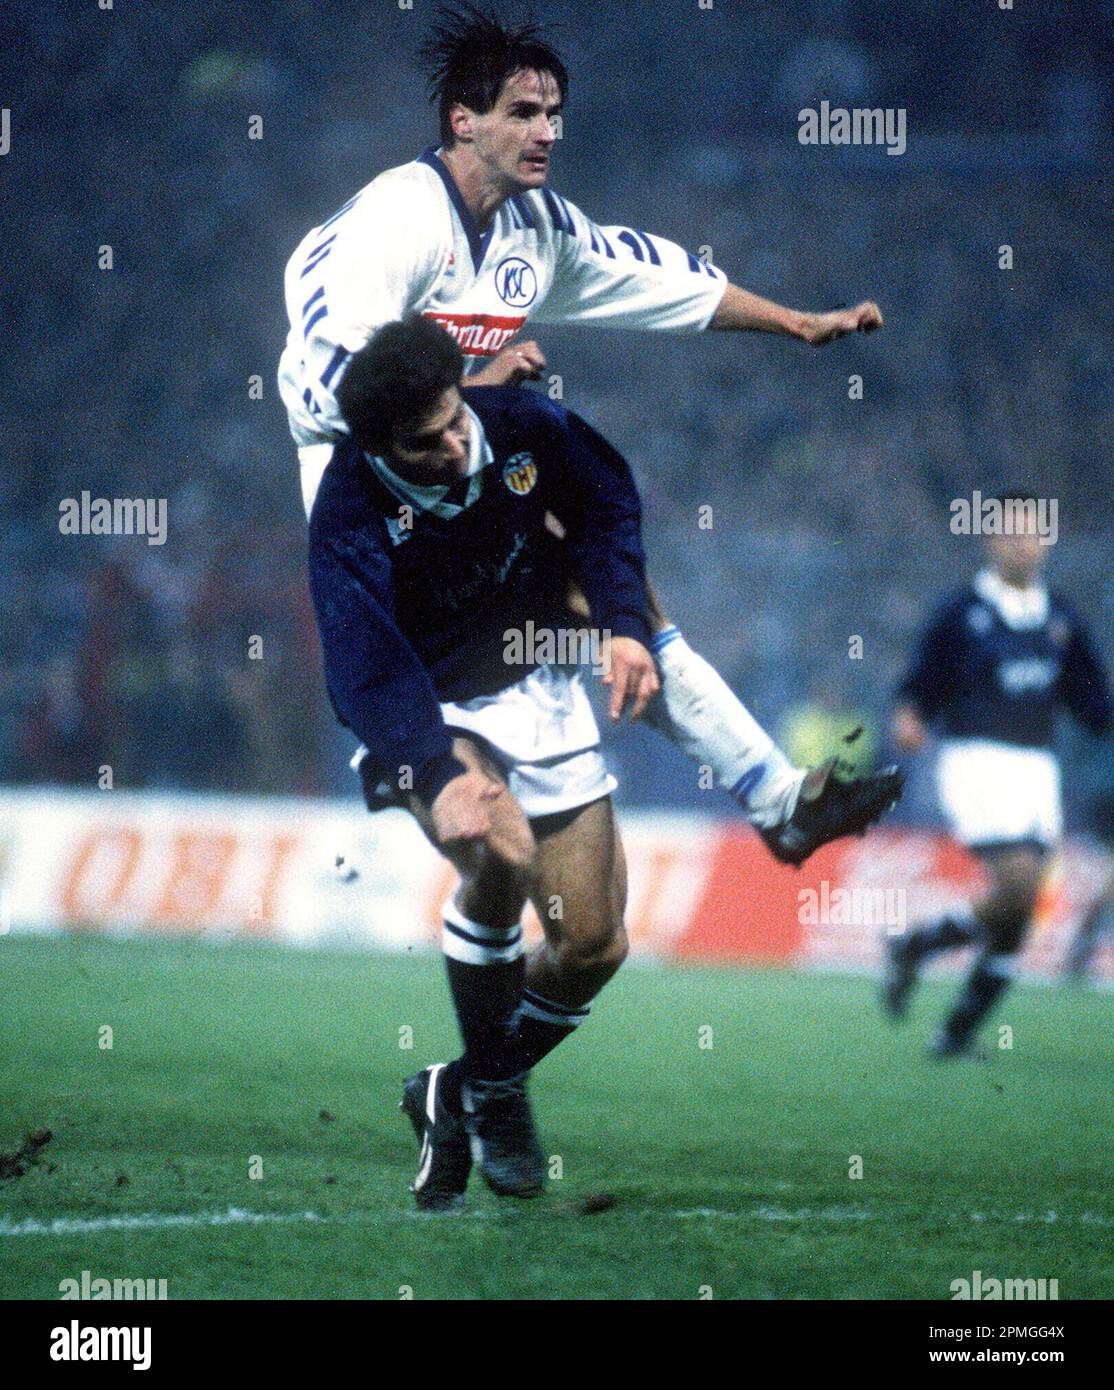 Sheffield United 6-0 Tottenham Hotspur (March 1993) – Premier League Archive